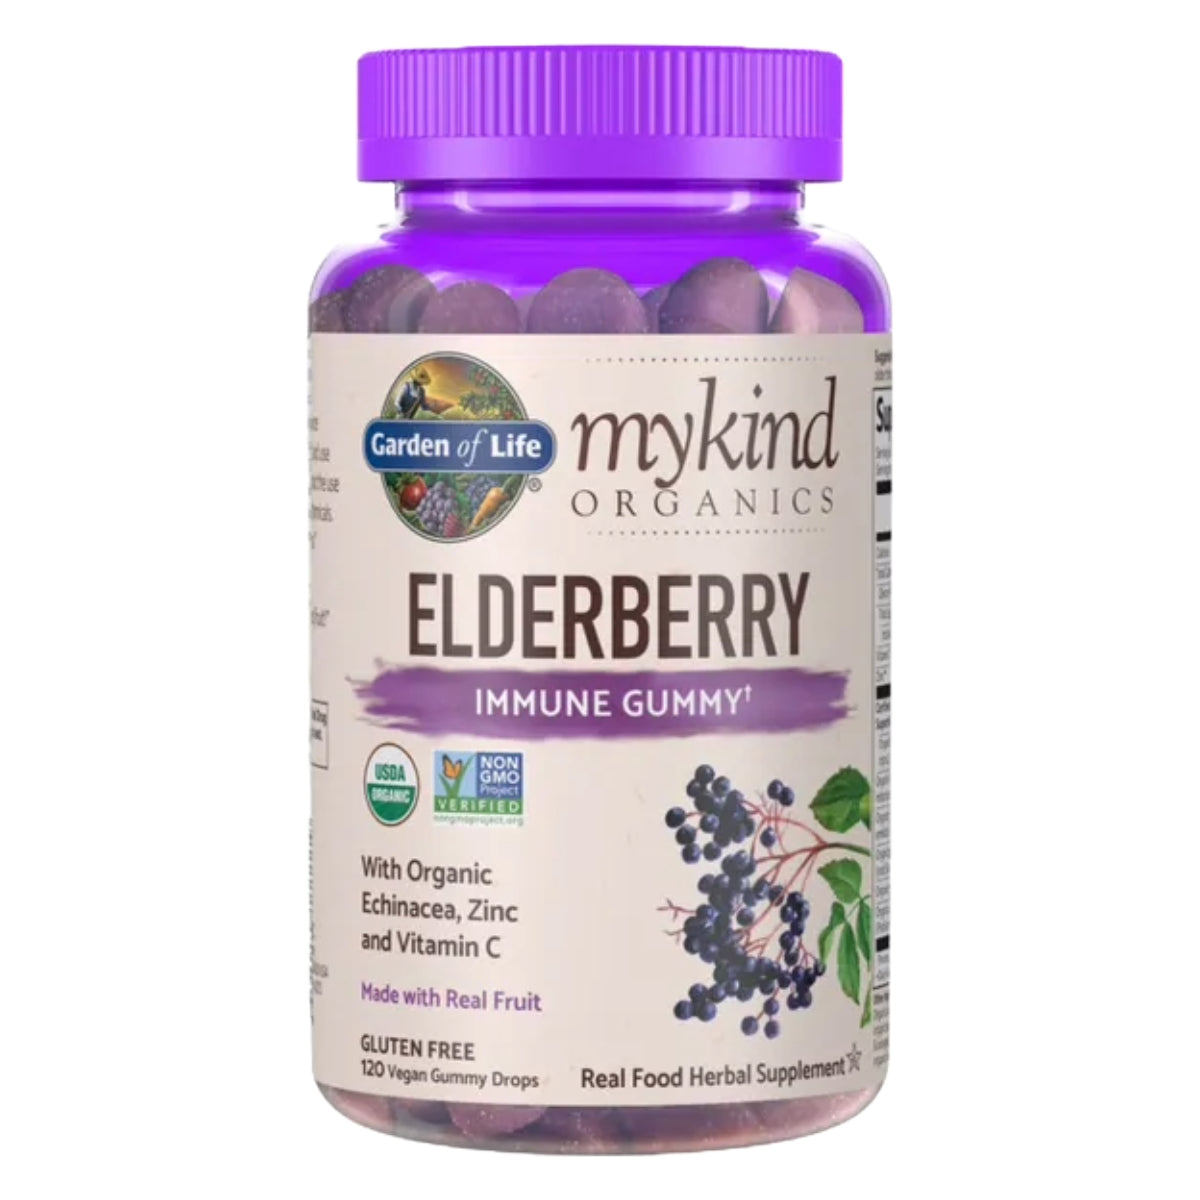 Garden of Life mykind Elderberry (Immune Gummy)